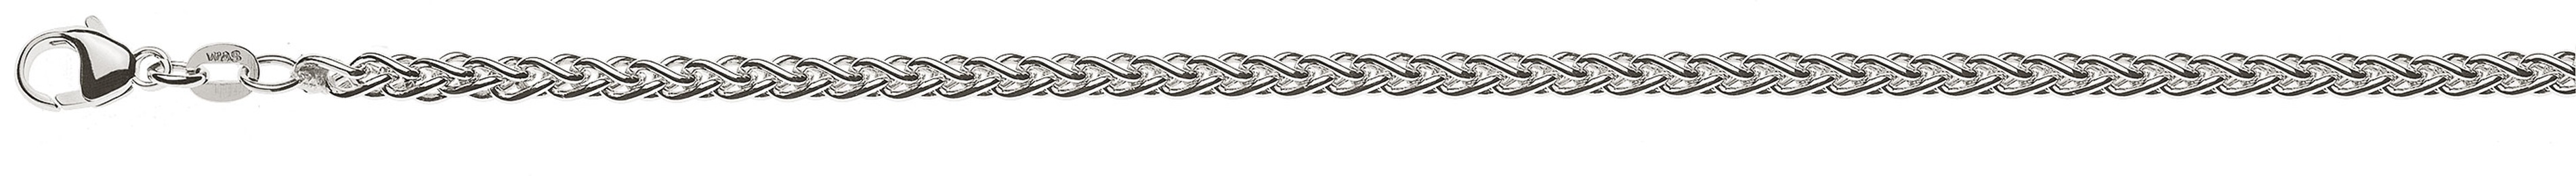 AURONOS Prestige Necklace white gold 18K cable chain 45cm 3.3mm